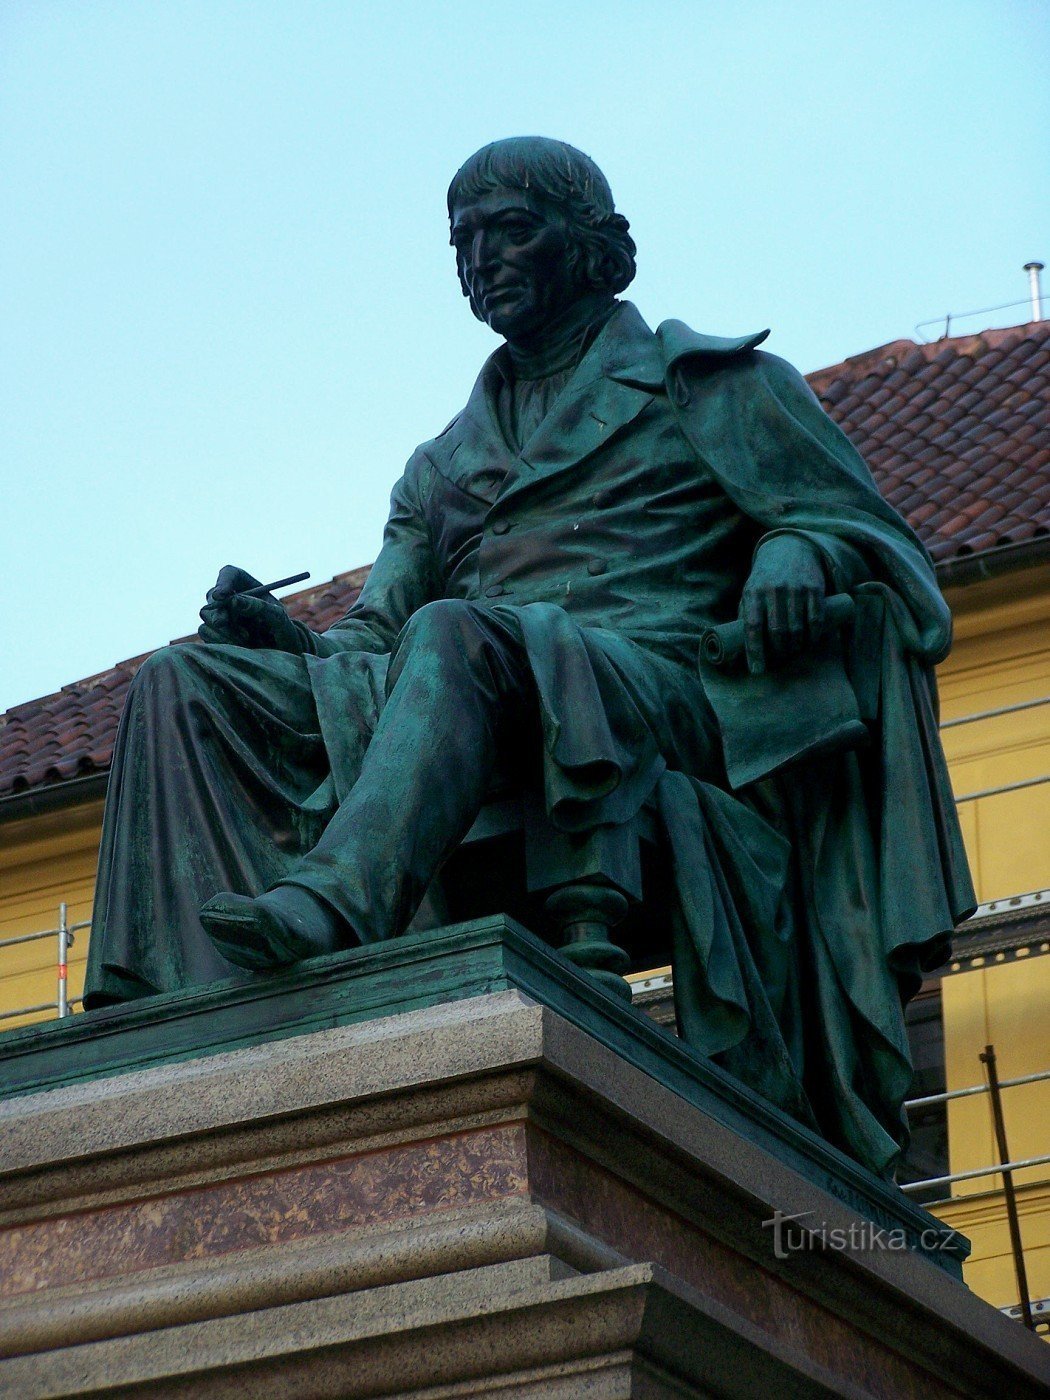 Monumentul lui Josef Jungmann